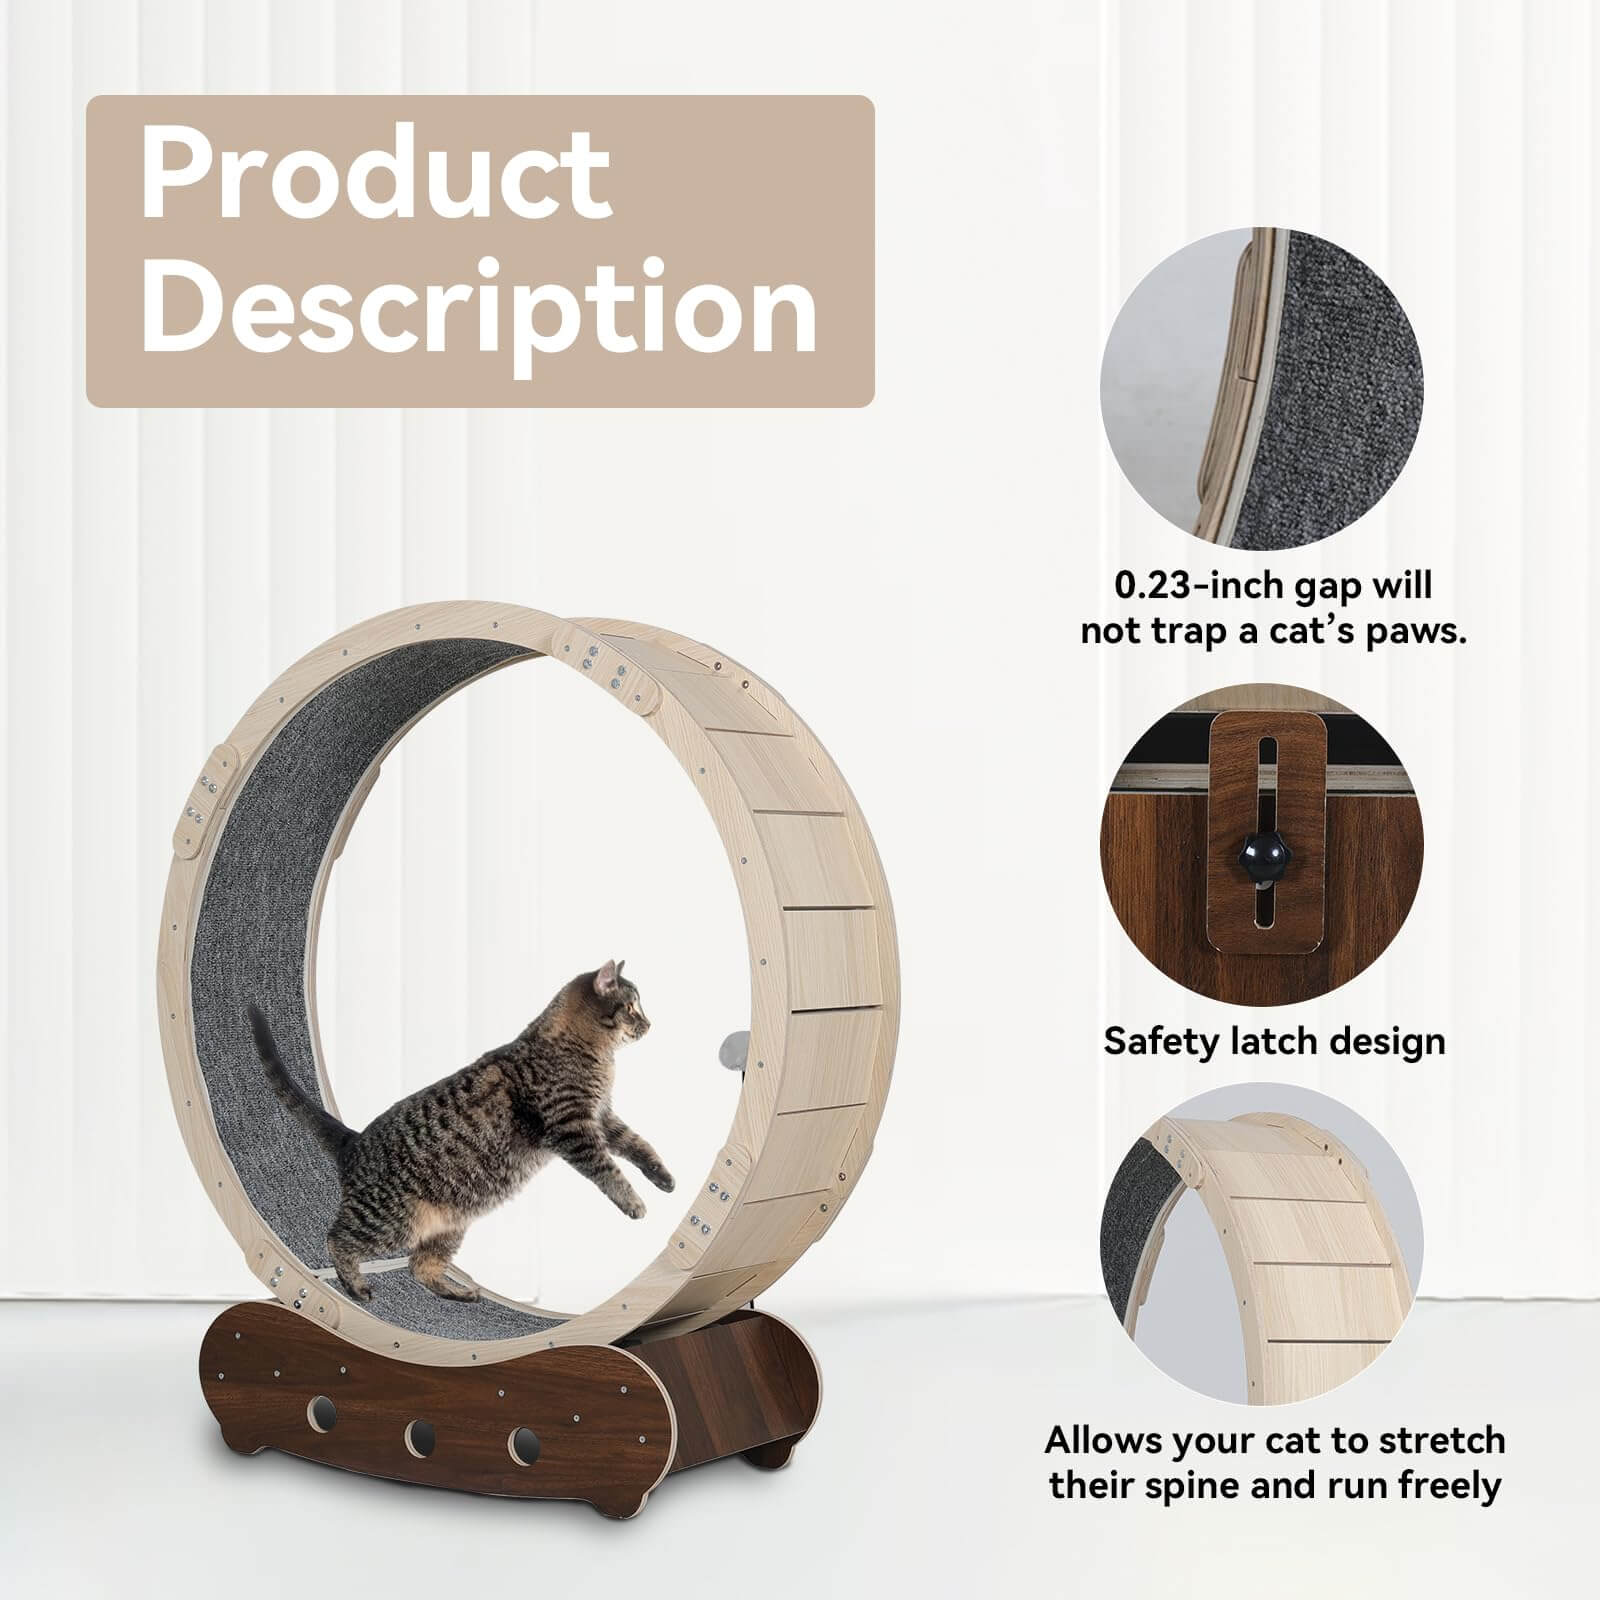 Wooden cat exercise wheel description